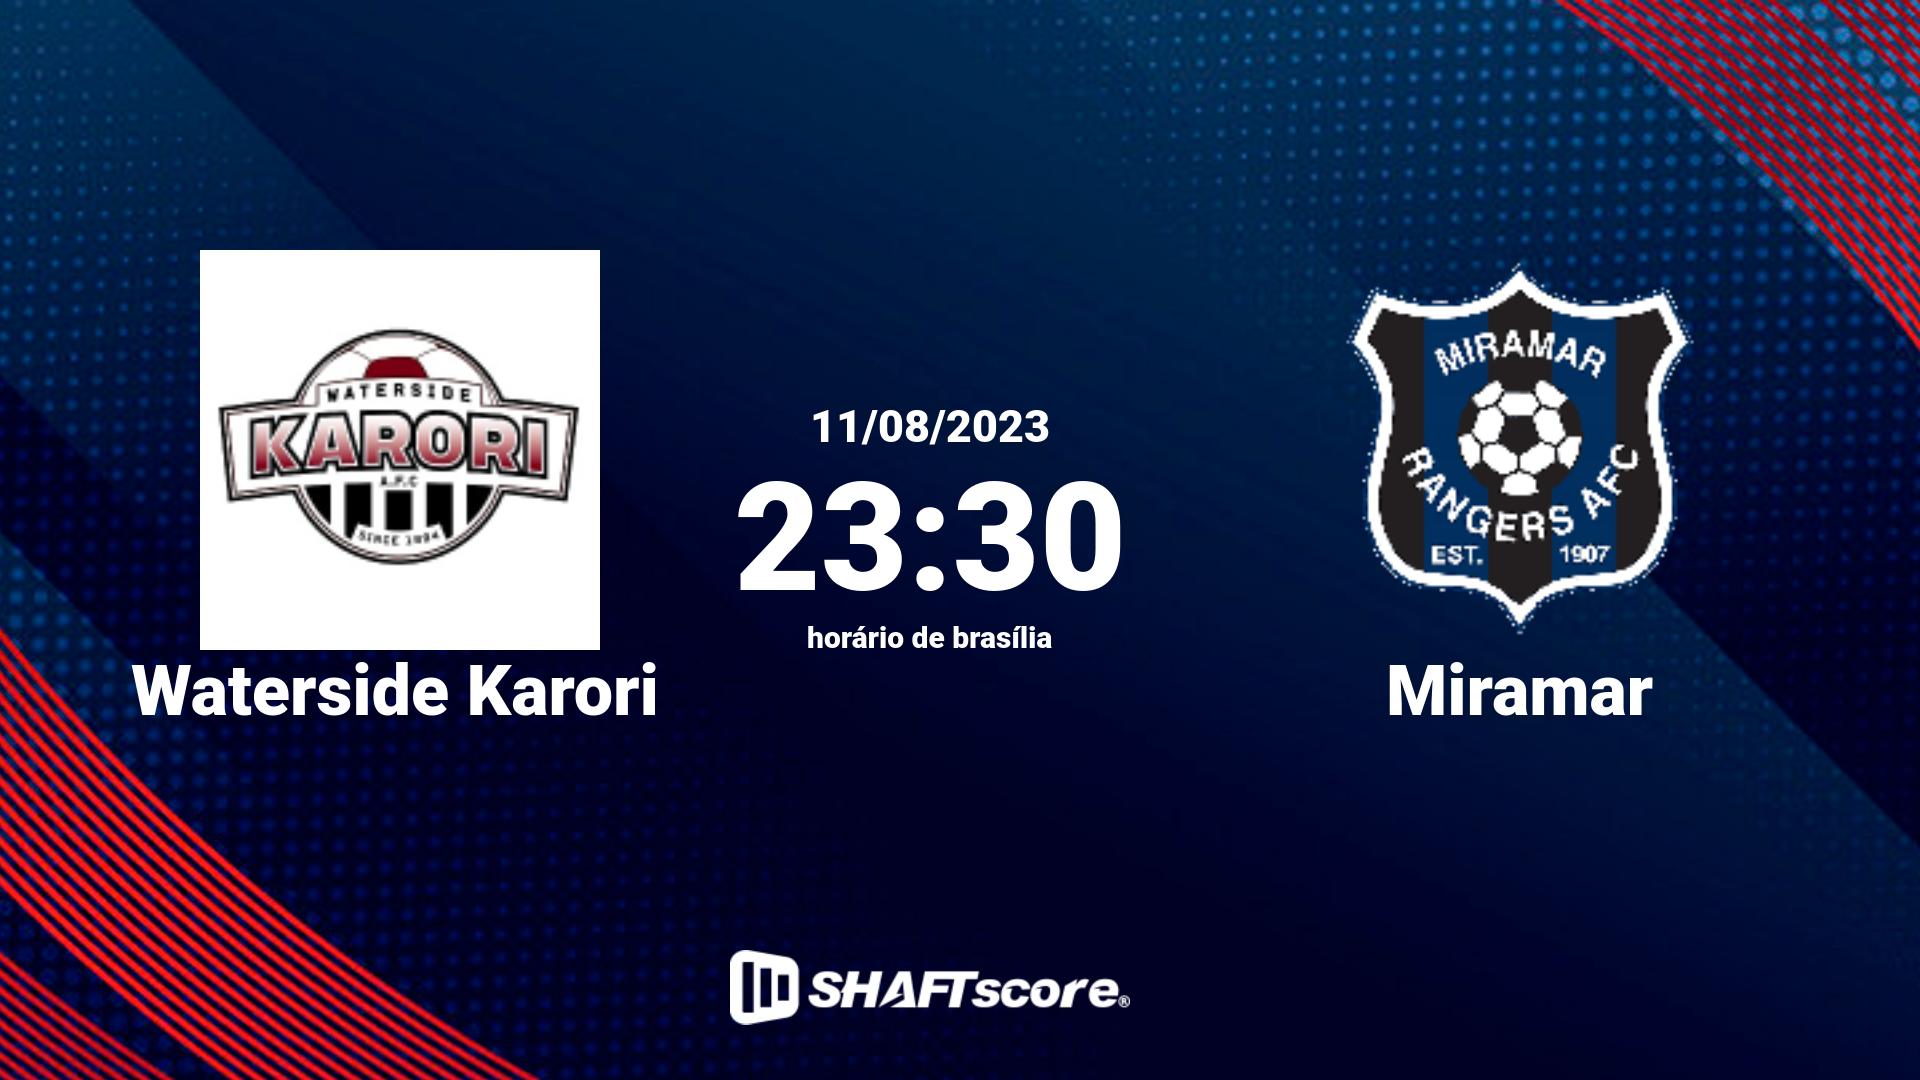 Estatísticas do jogo Waterside Karori vs Miramar 11.08 23:30